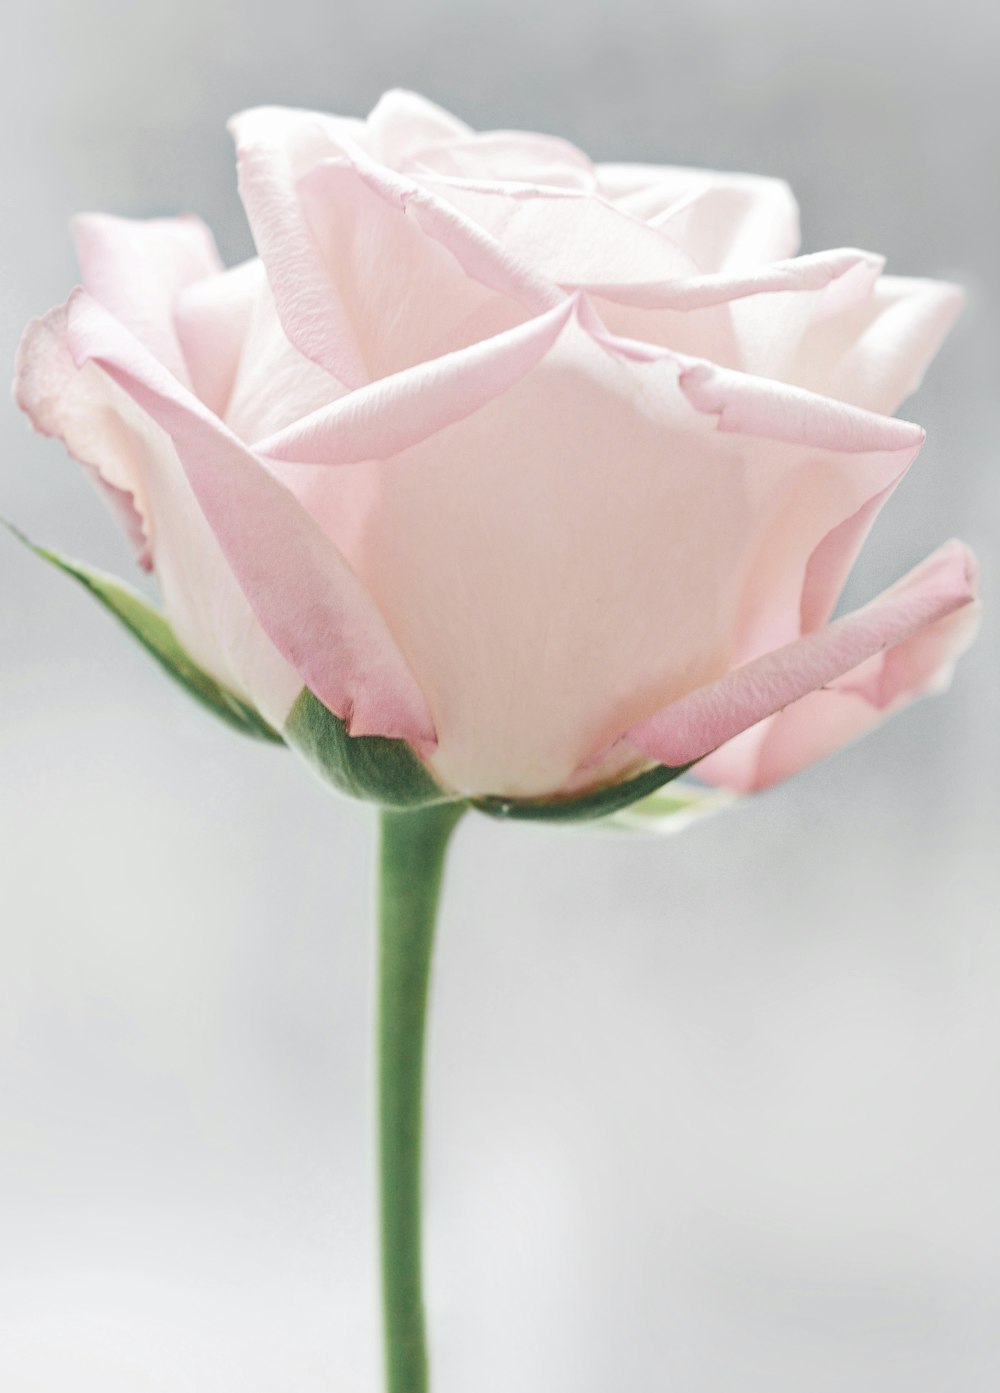 White rose photo – Free Flower Image on Unsplash